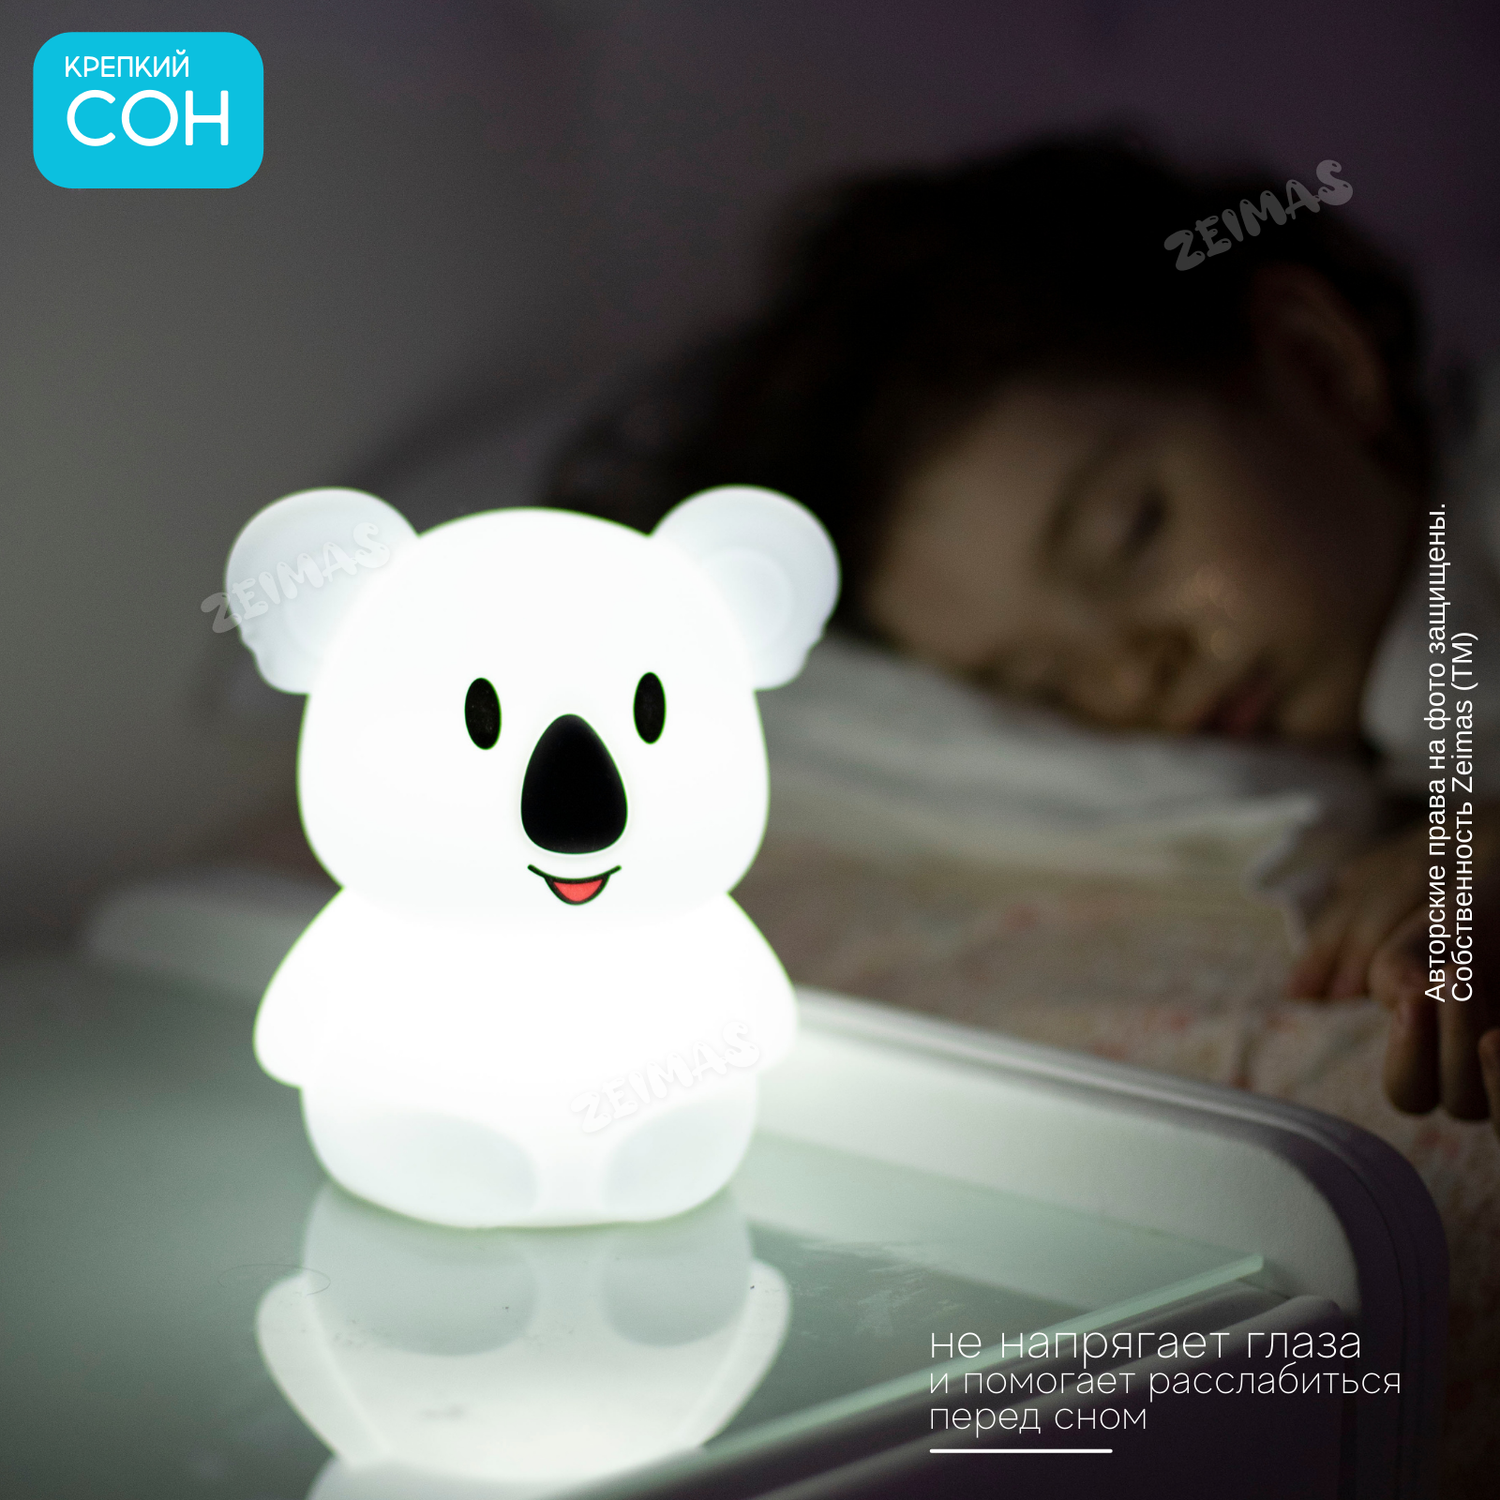 Ночник детский силиконовый Zeimas светильник игрушка Коала с пультом 9 цветов большой размер - фото 13